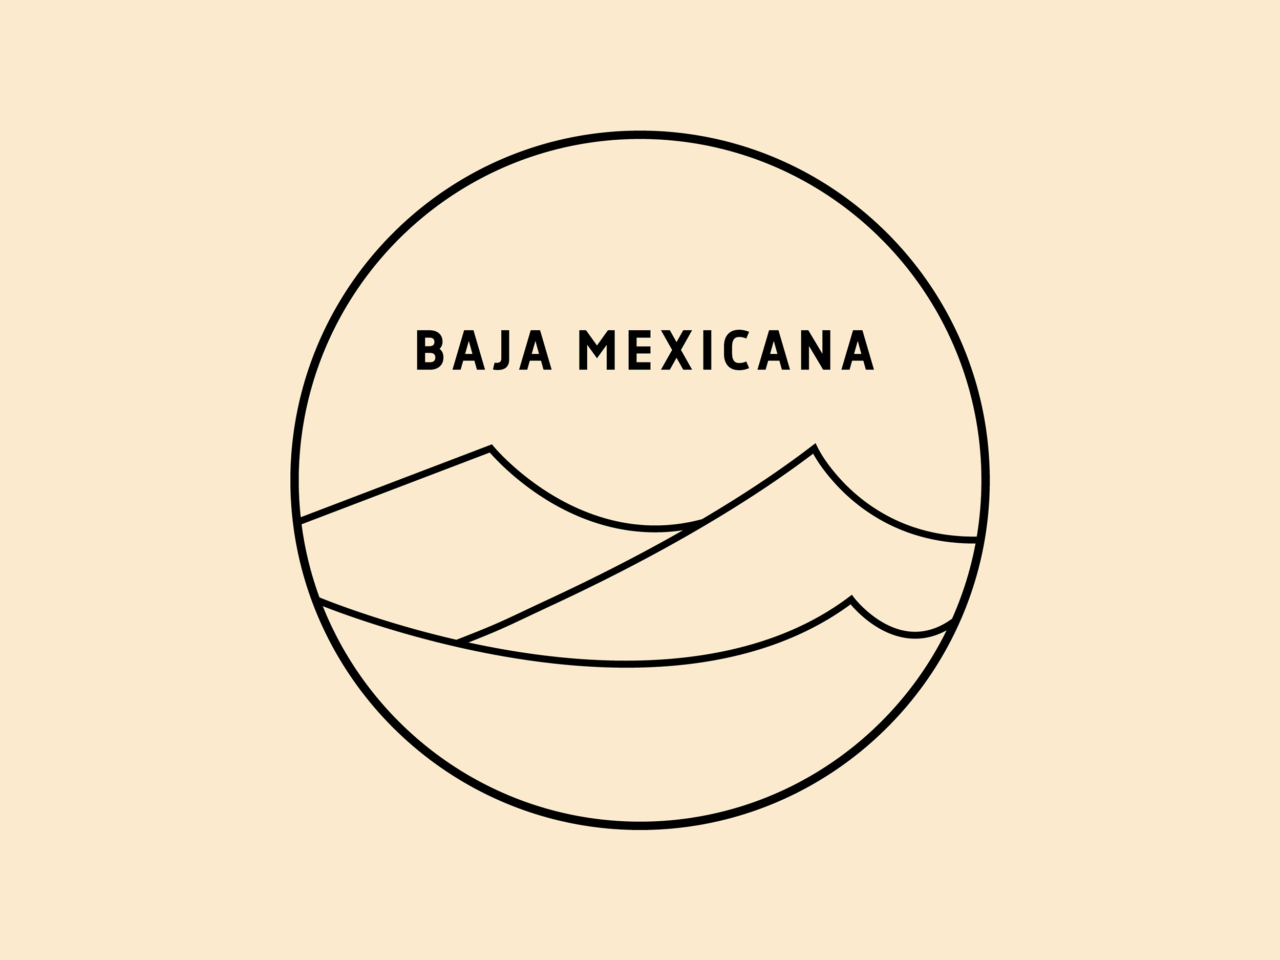 Baja Mexicana